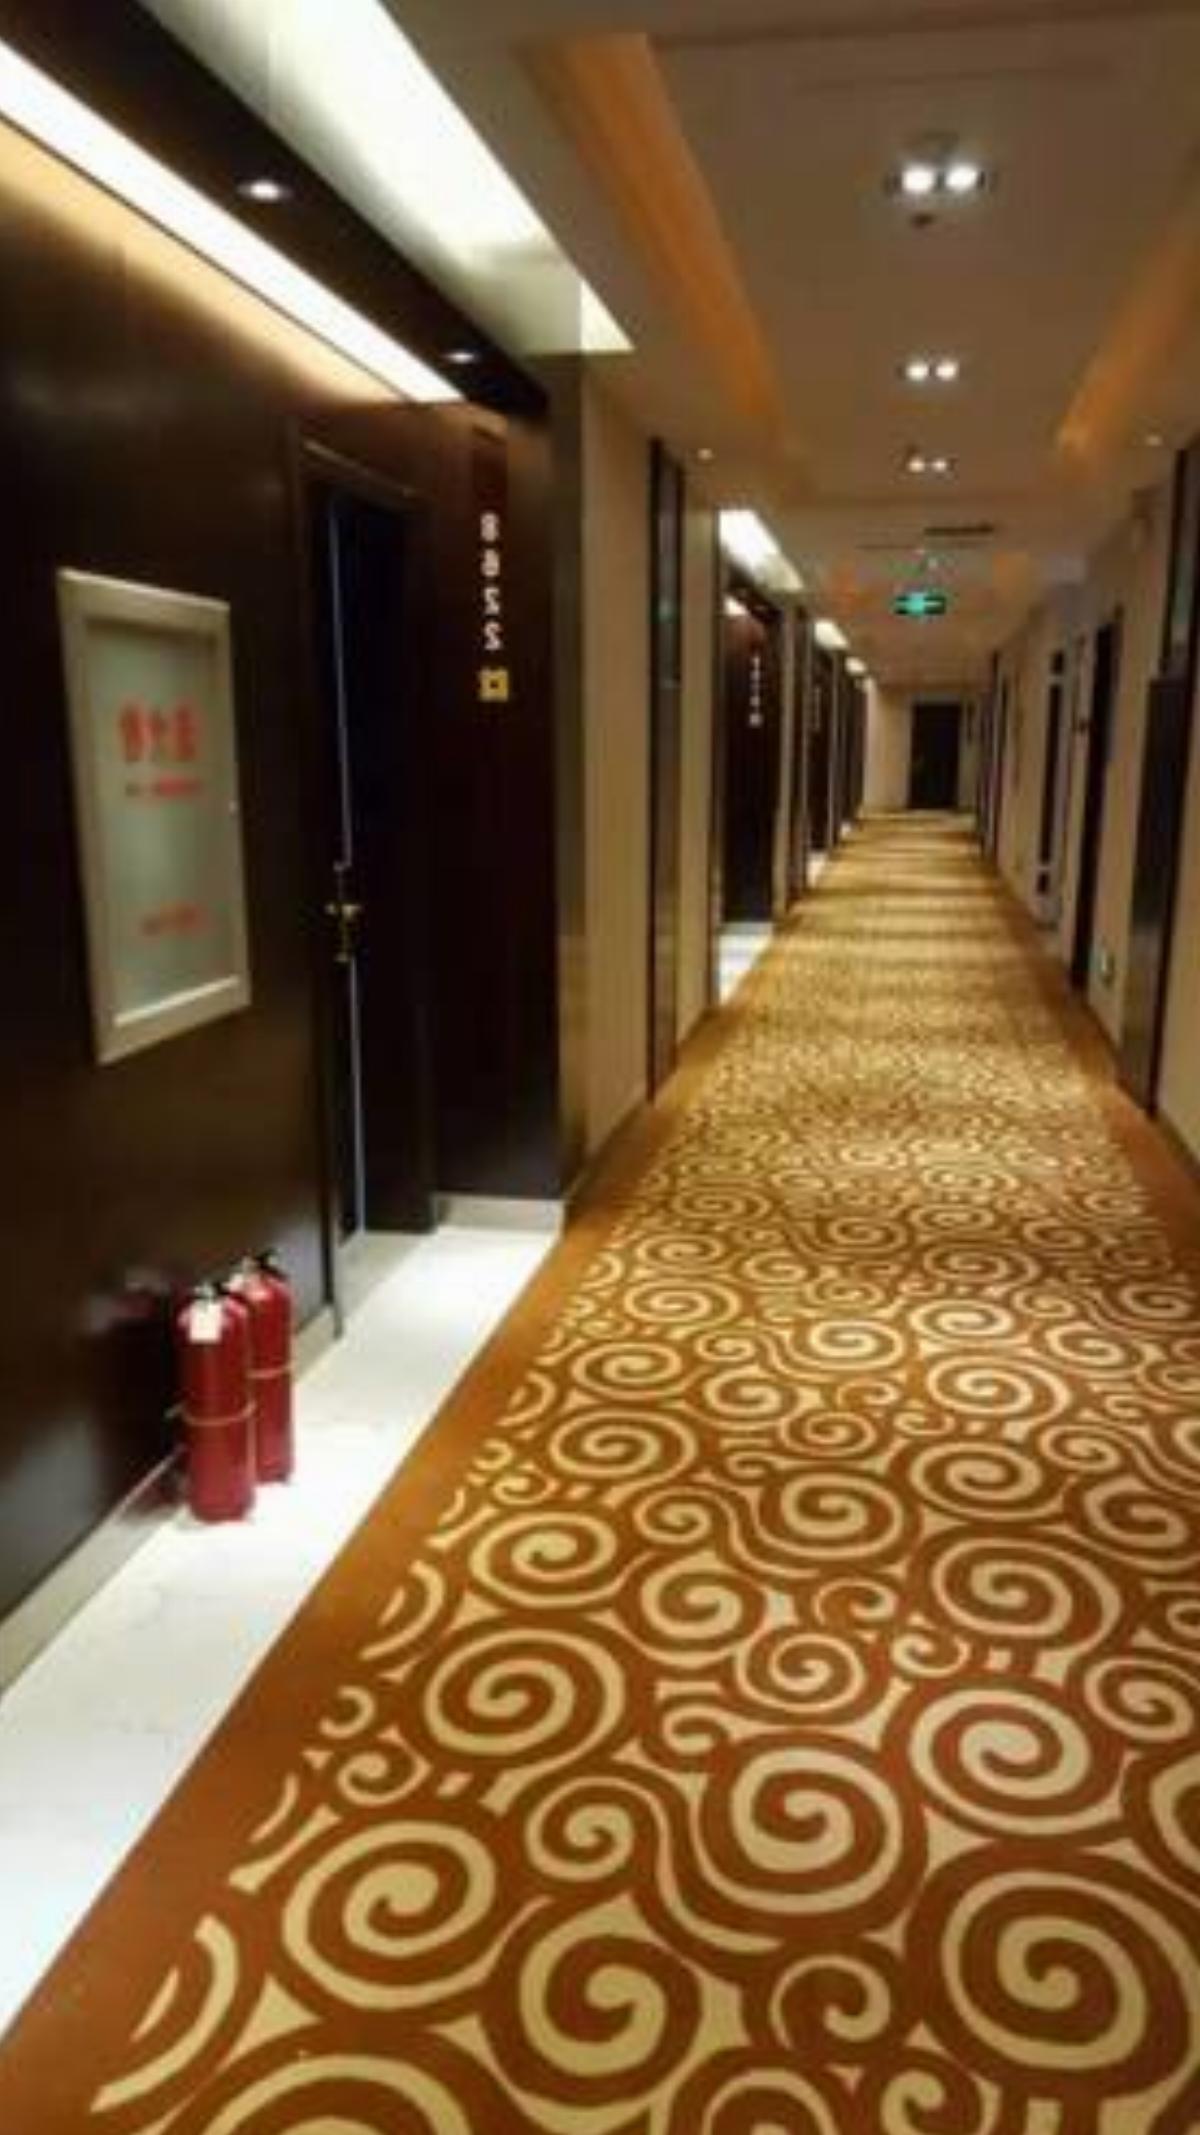 Qingdao Ge Xin Hotel Hotel Jimo China